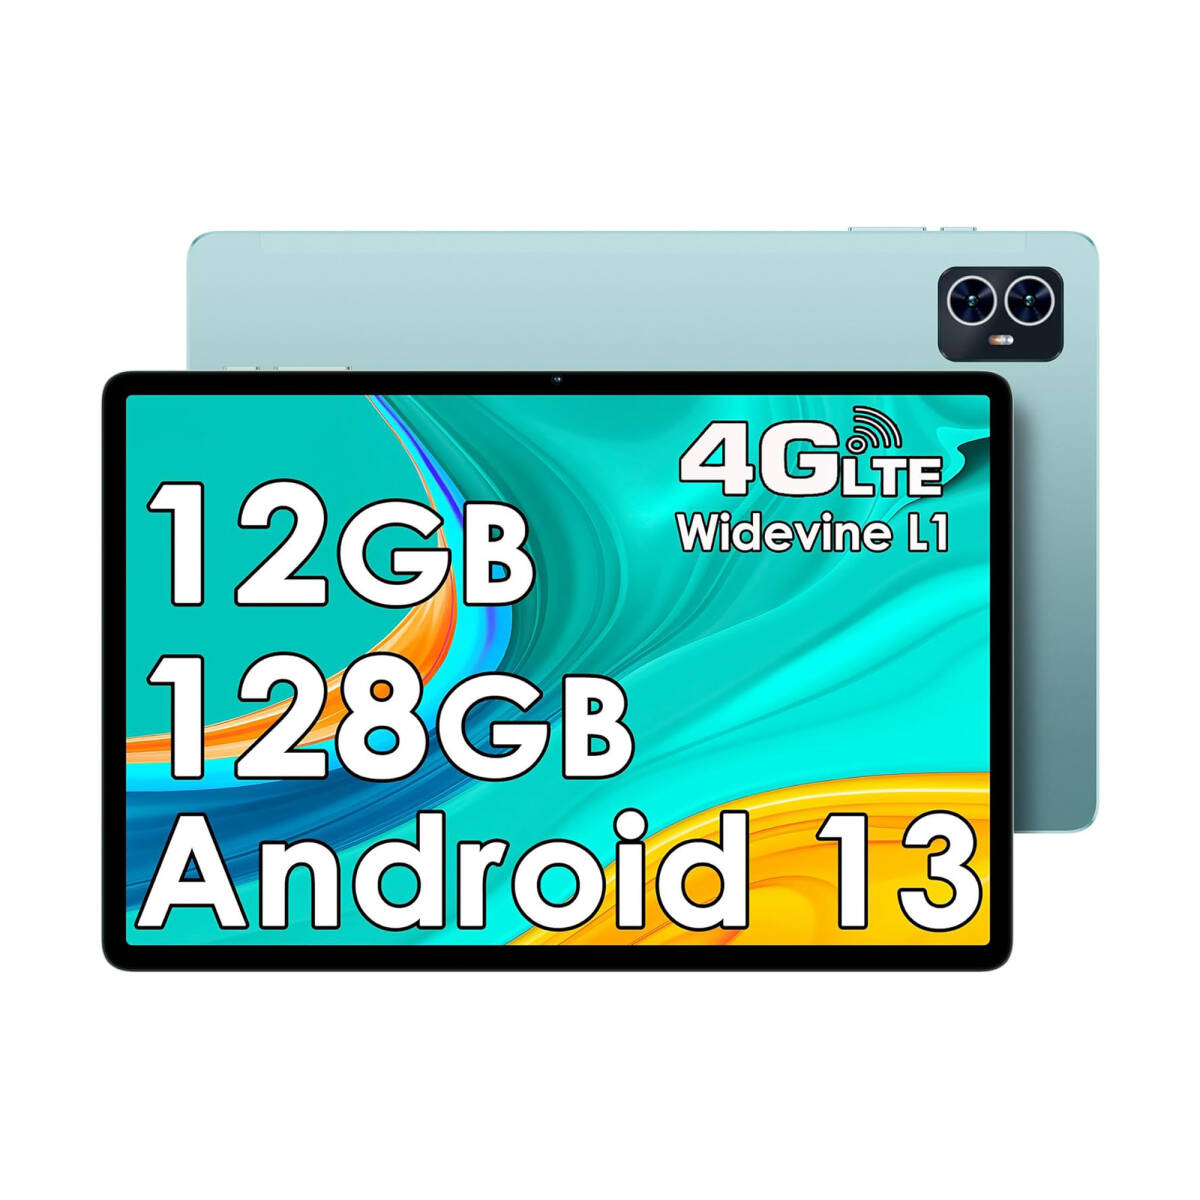 【新品】TECLAST M50 Android 13 デュアルSIMフリー タブレット 10.1インチ 4G LTE/12GB RAM/128GB ROM 6000mAh 大容量バッテリー搭載_画像2